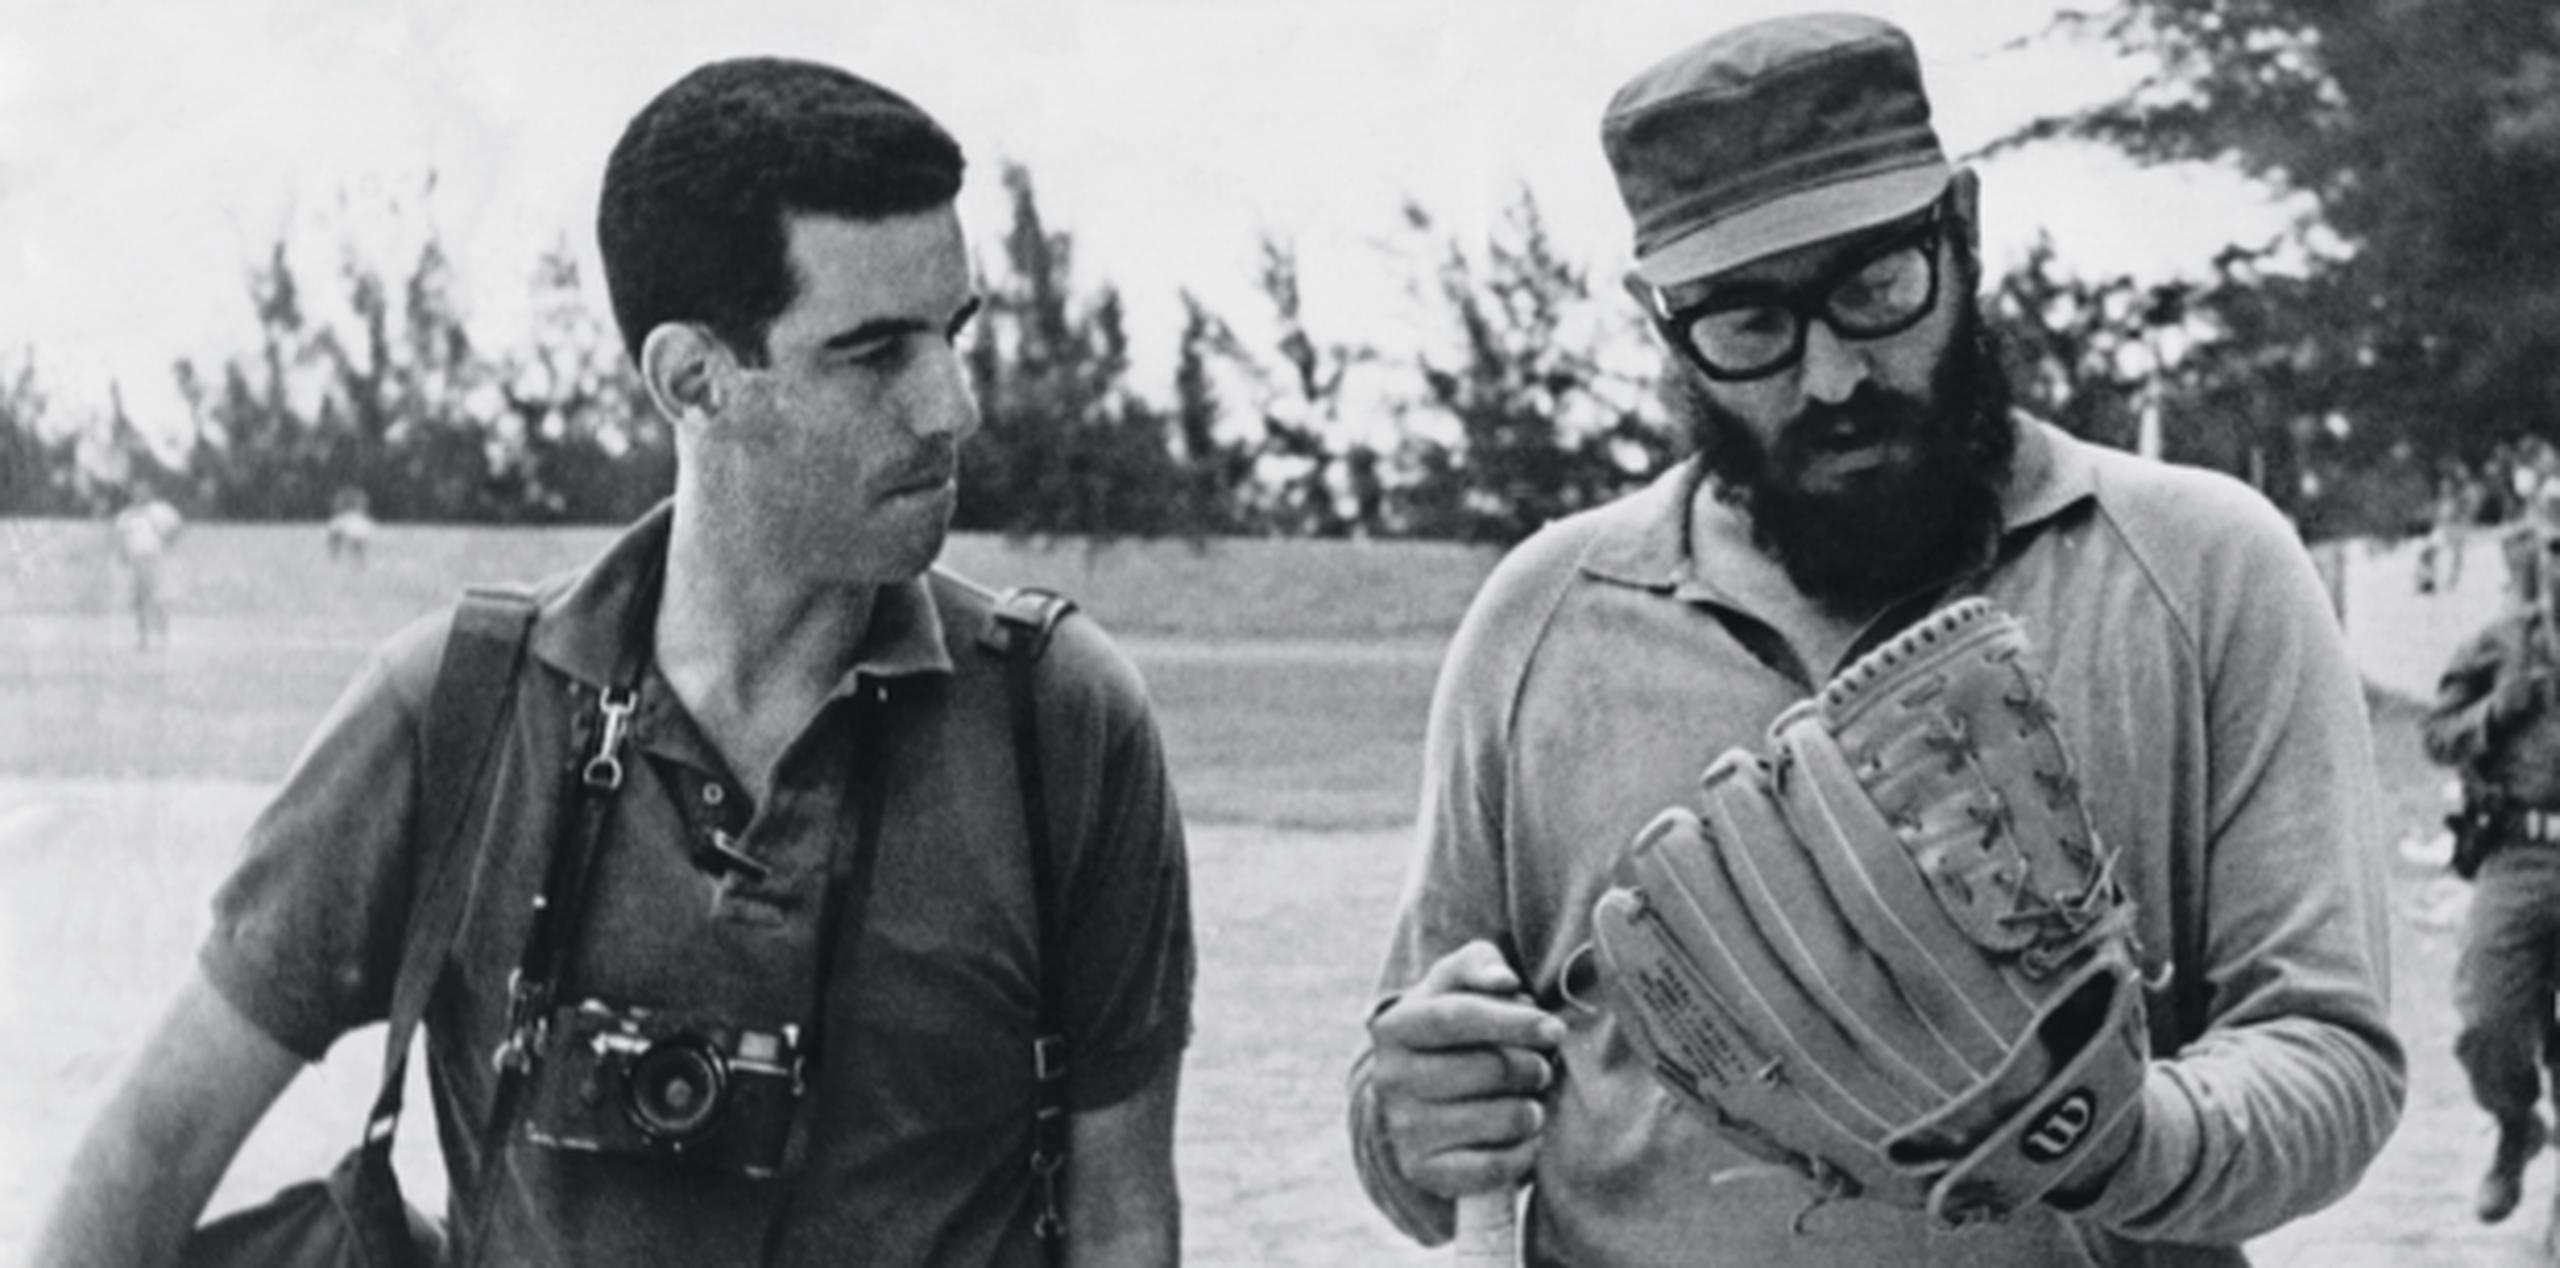 Fidel Castro en su apogeo concedía una larguísima entrevista al fotorreportero estadounidense Lee Lockwood que acaba de ser relanzada. (EFE)